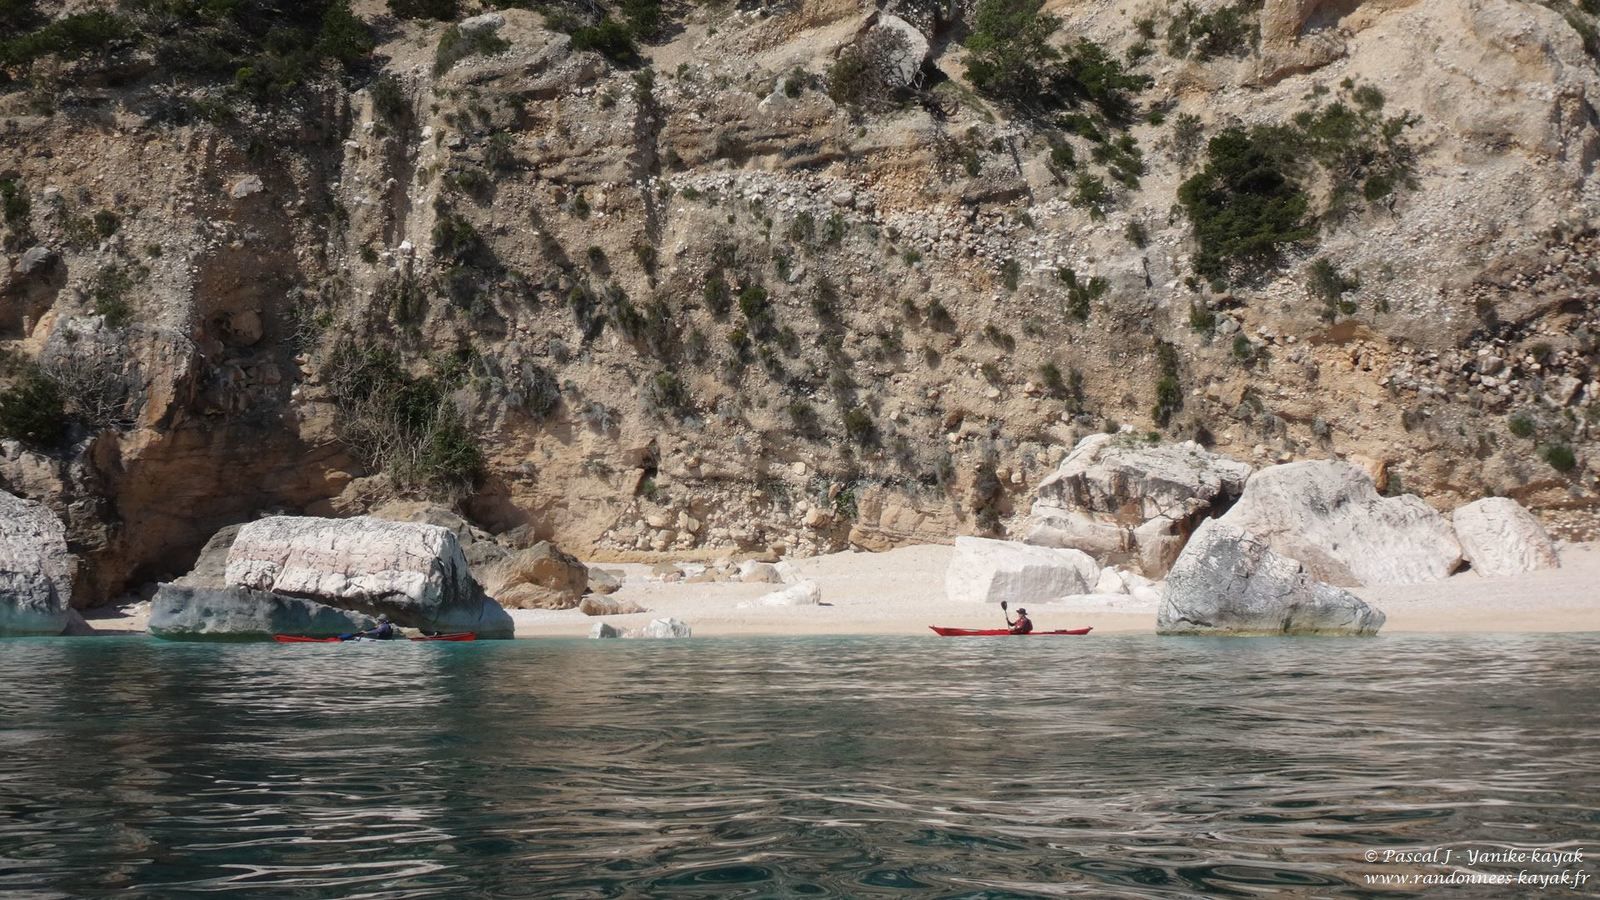 Sardegna 2019, una nuova avventura - Chapitre 2 : à la découverte des merveilles du Golfe d'Orosei (2)